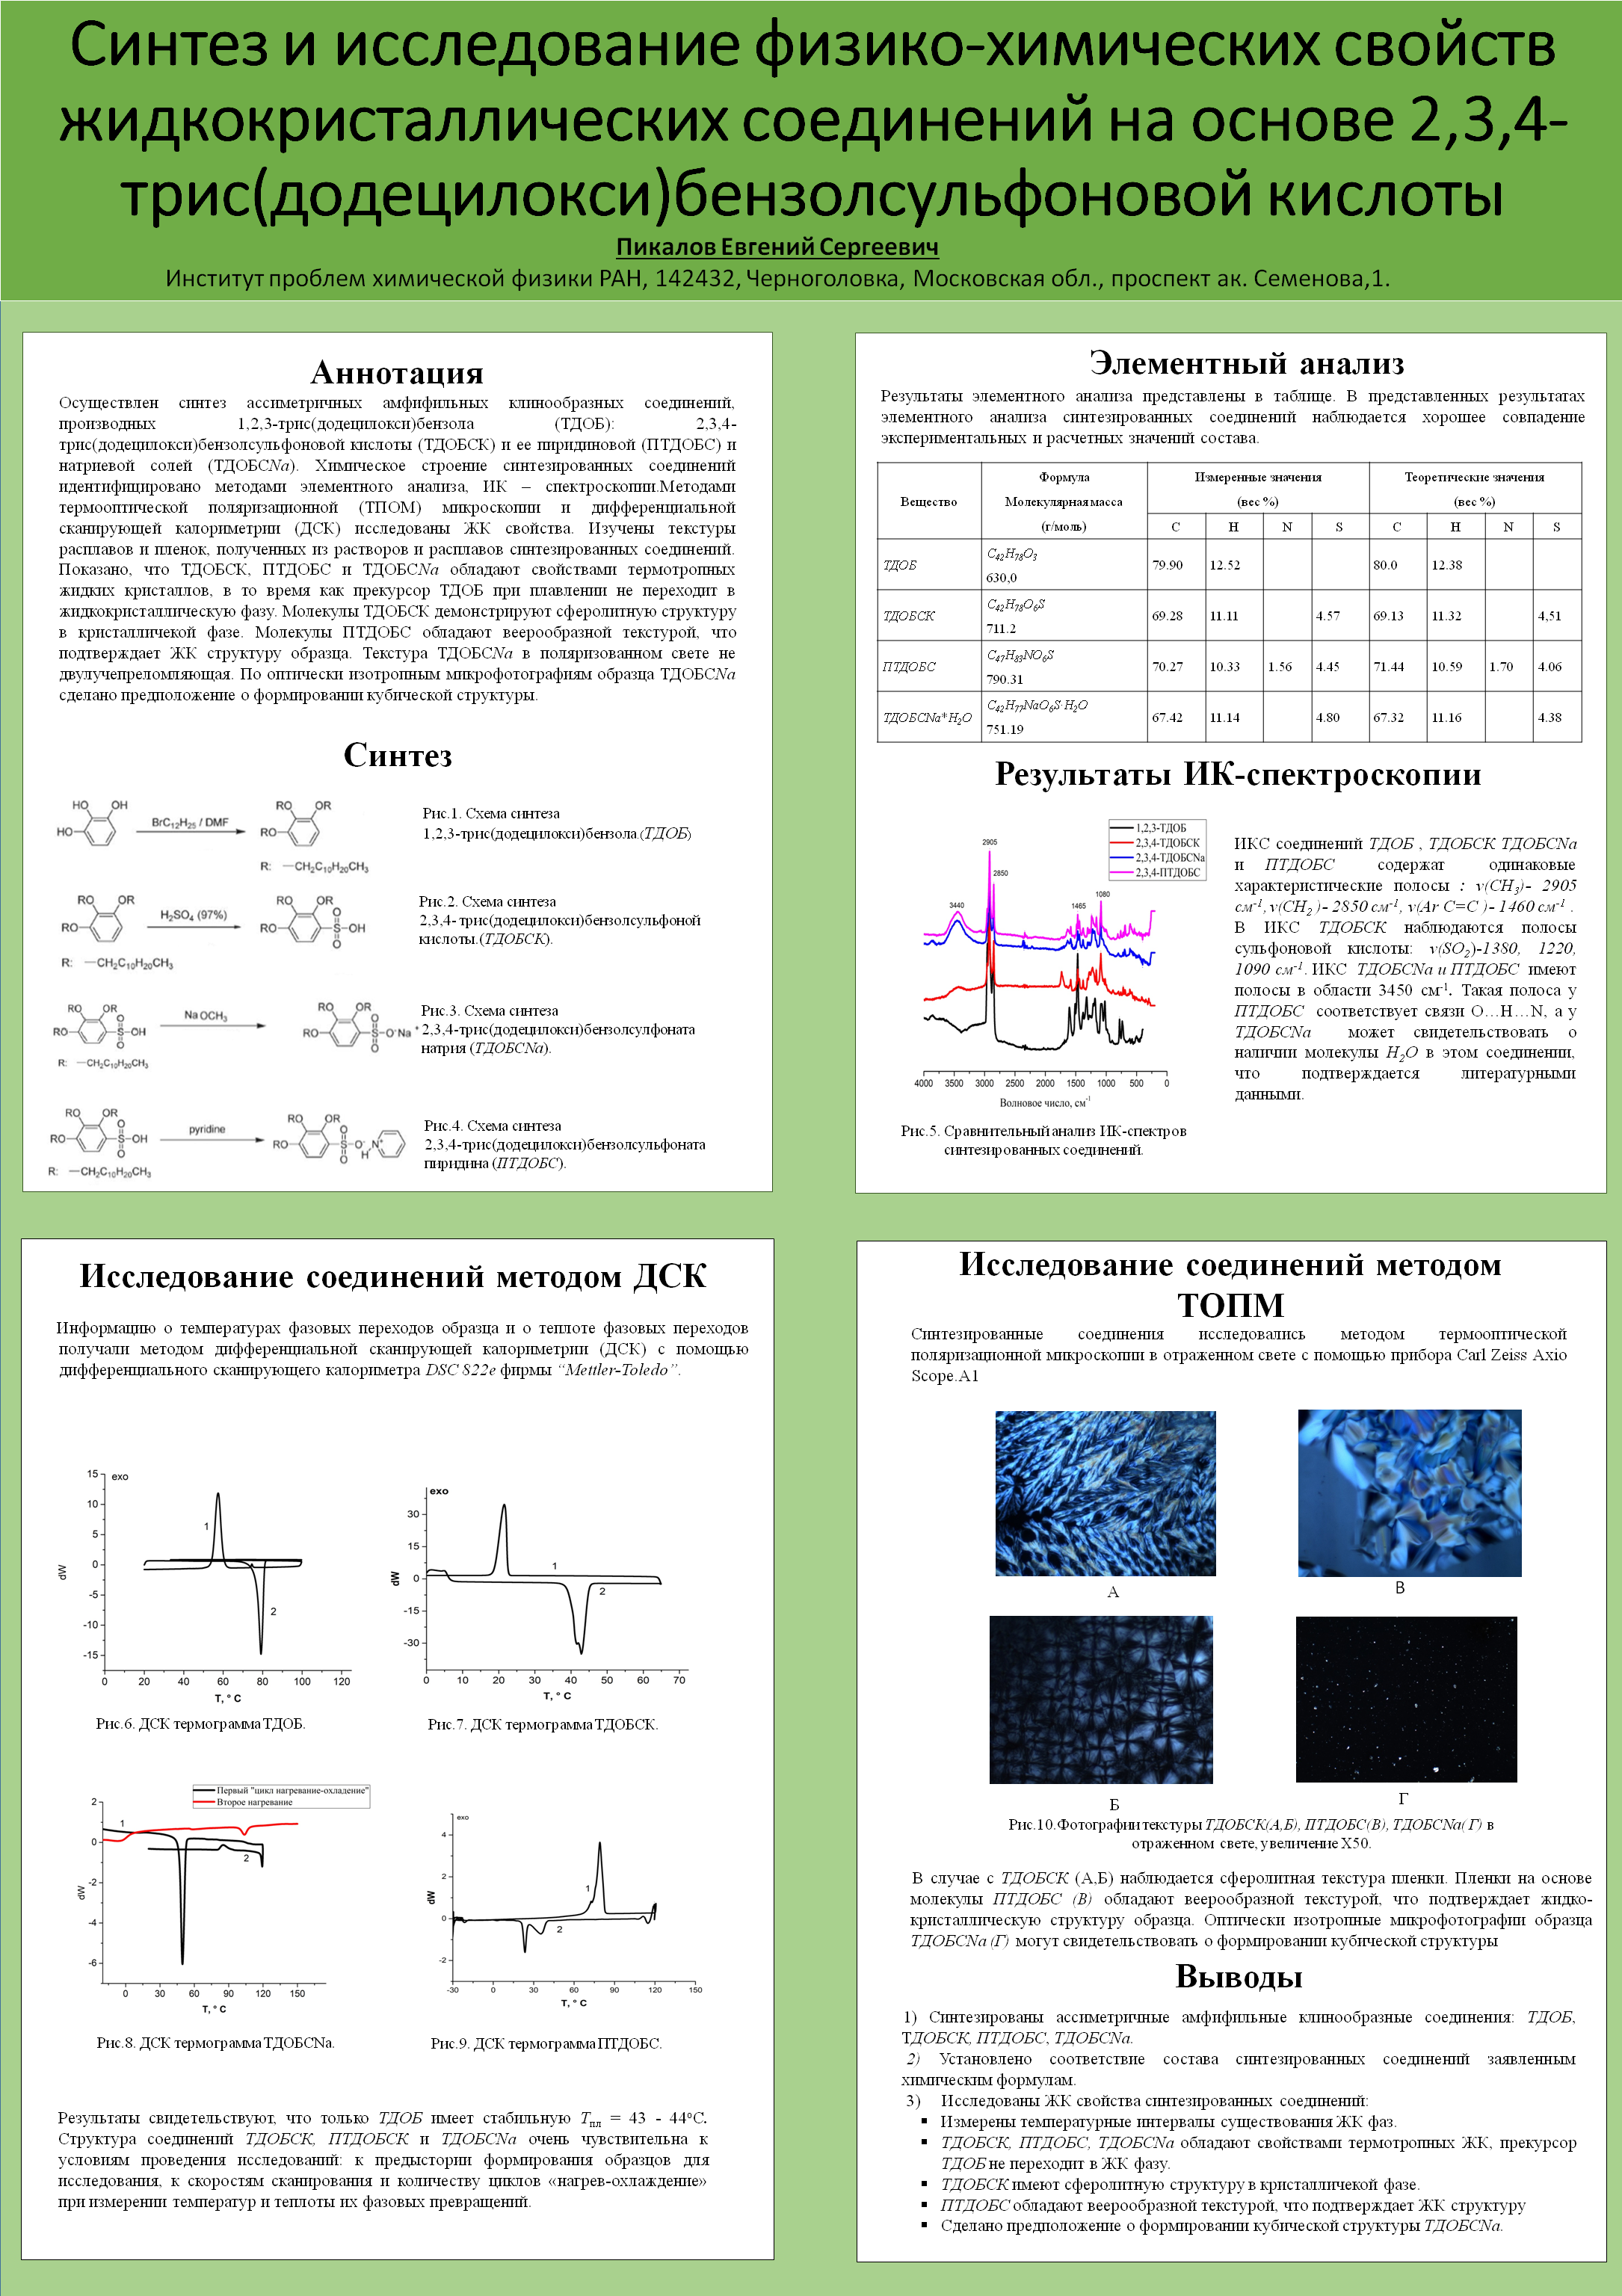 Синтез и исследование физико-химических свойств жидкокристаллических соединений на основе 2,3,4-трис(додецилокси)бензолсульфоновой кислоты.